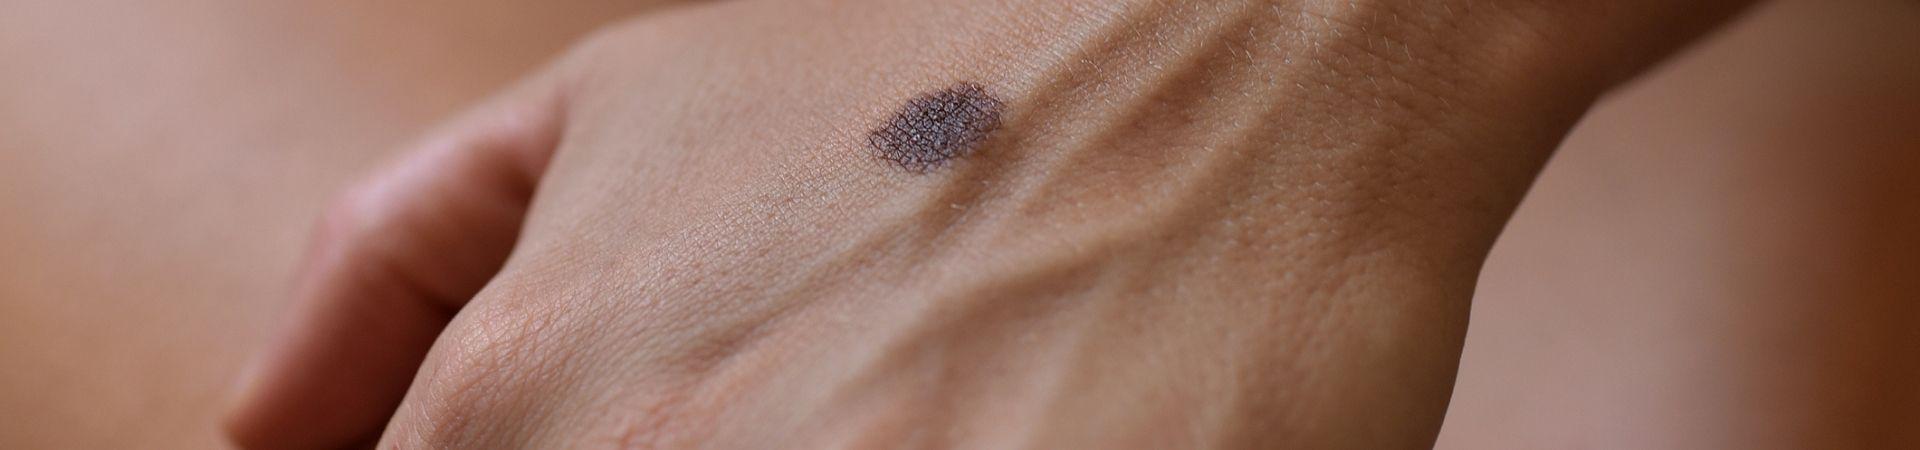 Tumori della pelle:  tra prevenzione e diffusione